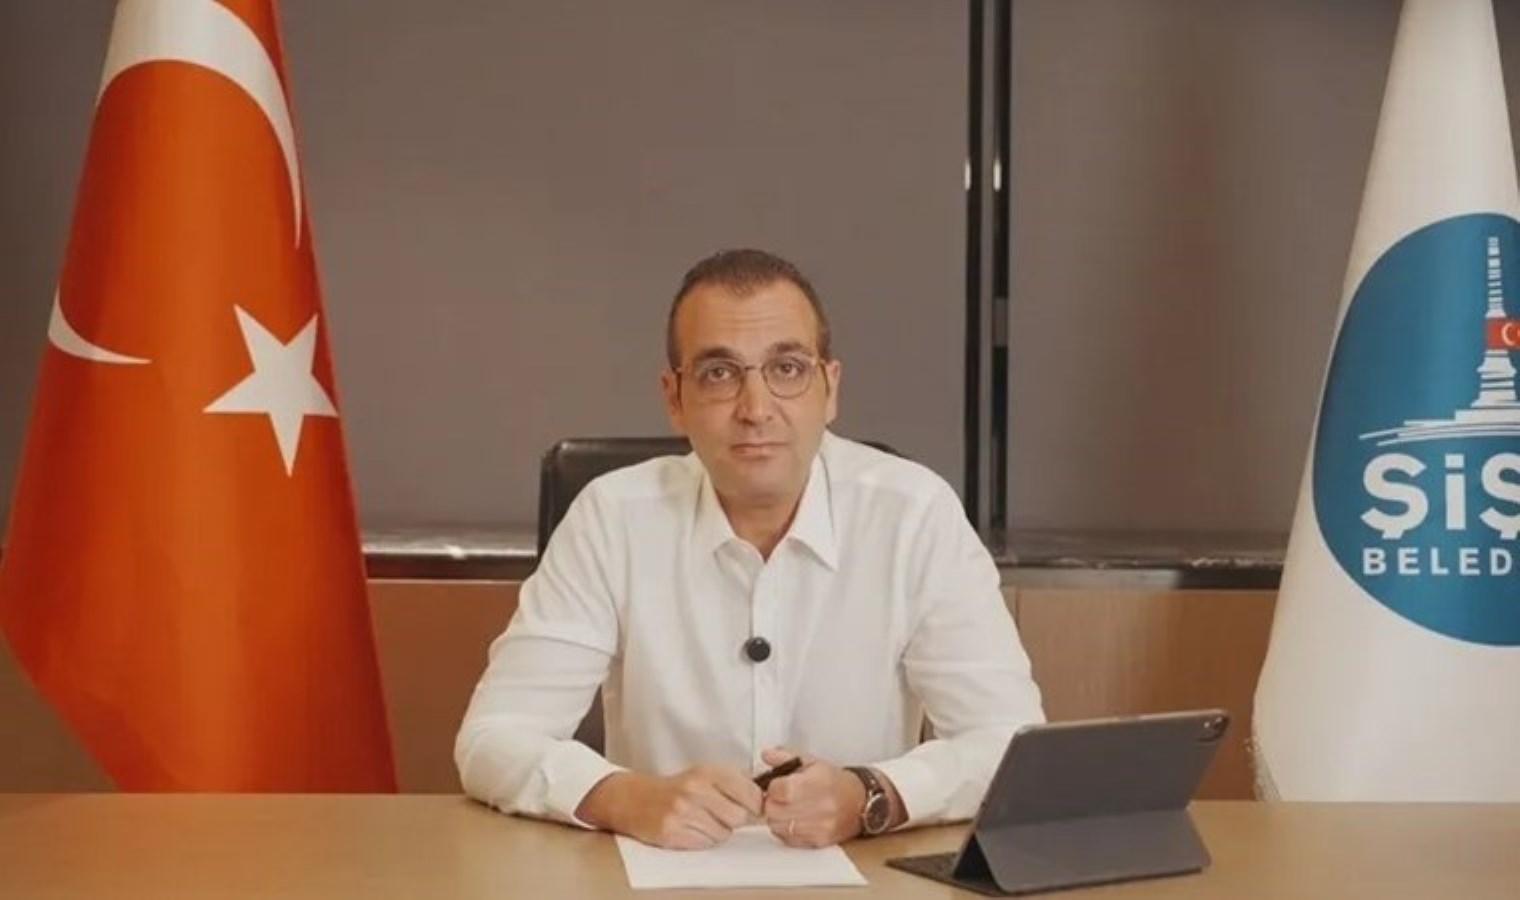 Şişli Belediye Başkanı Şahan’dan Vedat Işıkhan’a ‘SGK’ cevabı: ‘Baskılara boyun eğmeyiz’